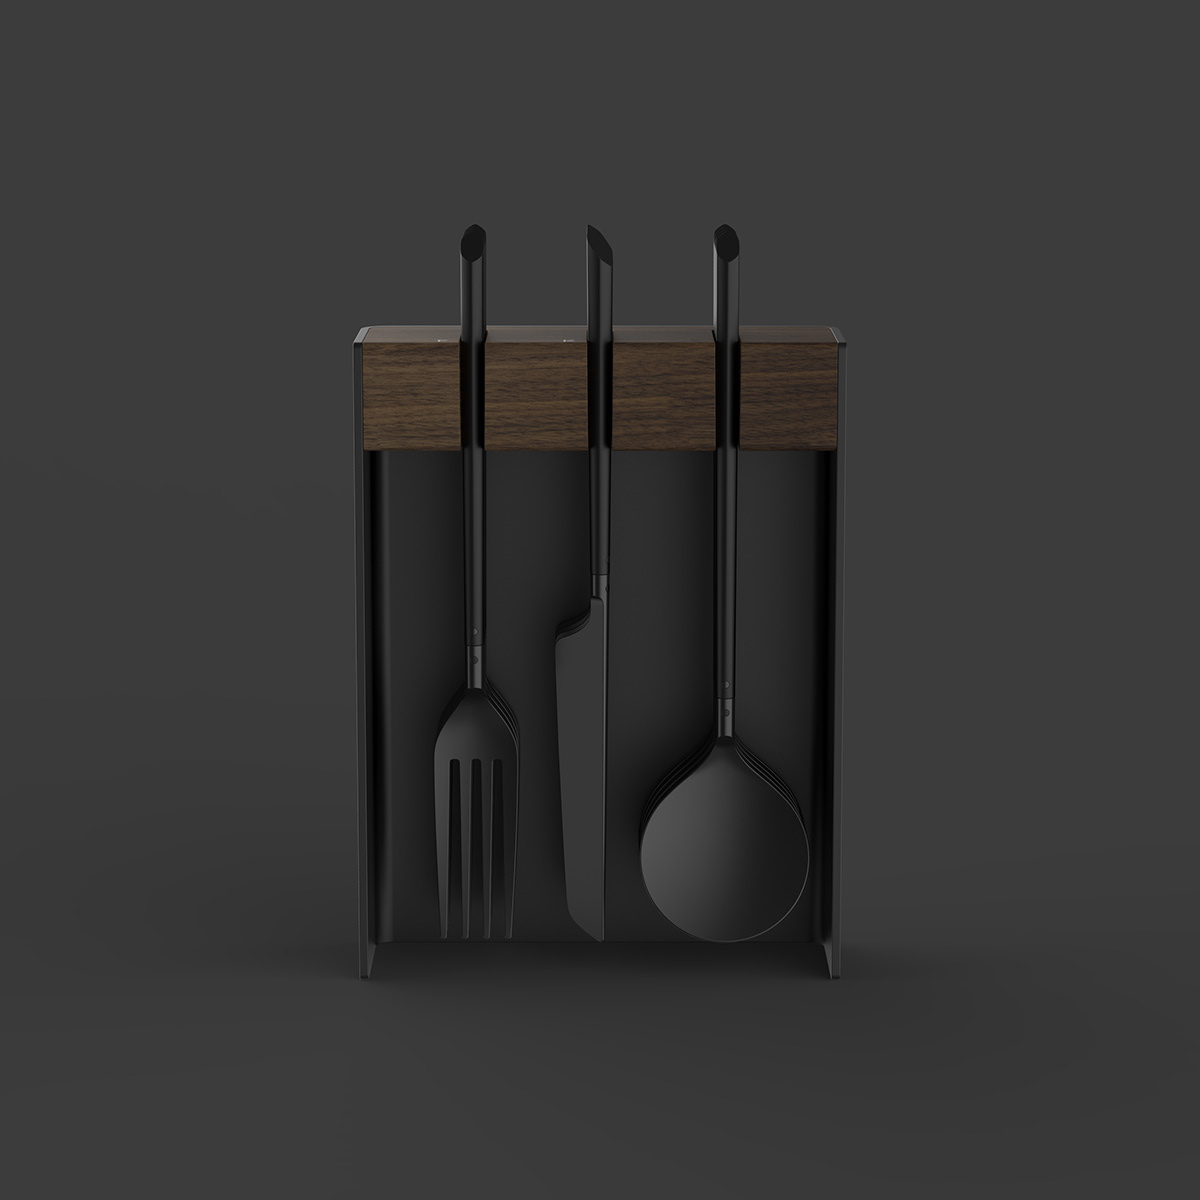 cutlery flatware fork industrial design  kitchen knife spoon Stand storage utensils